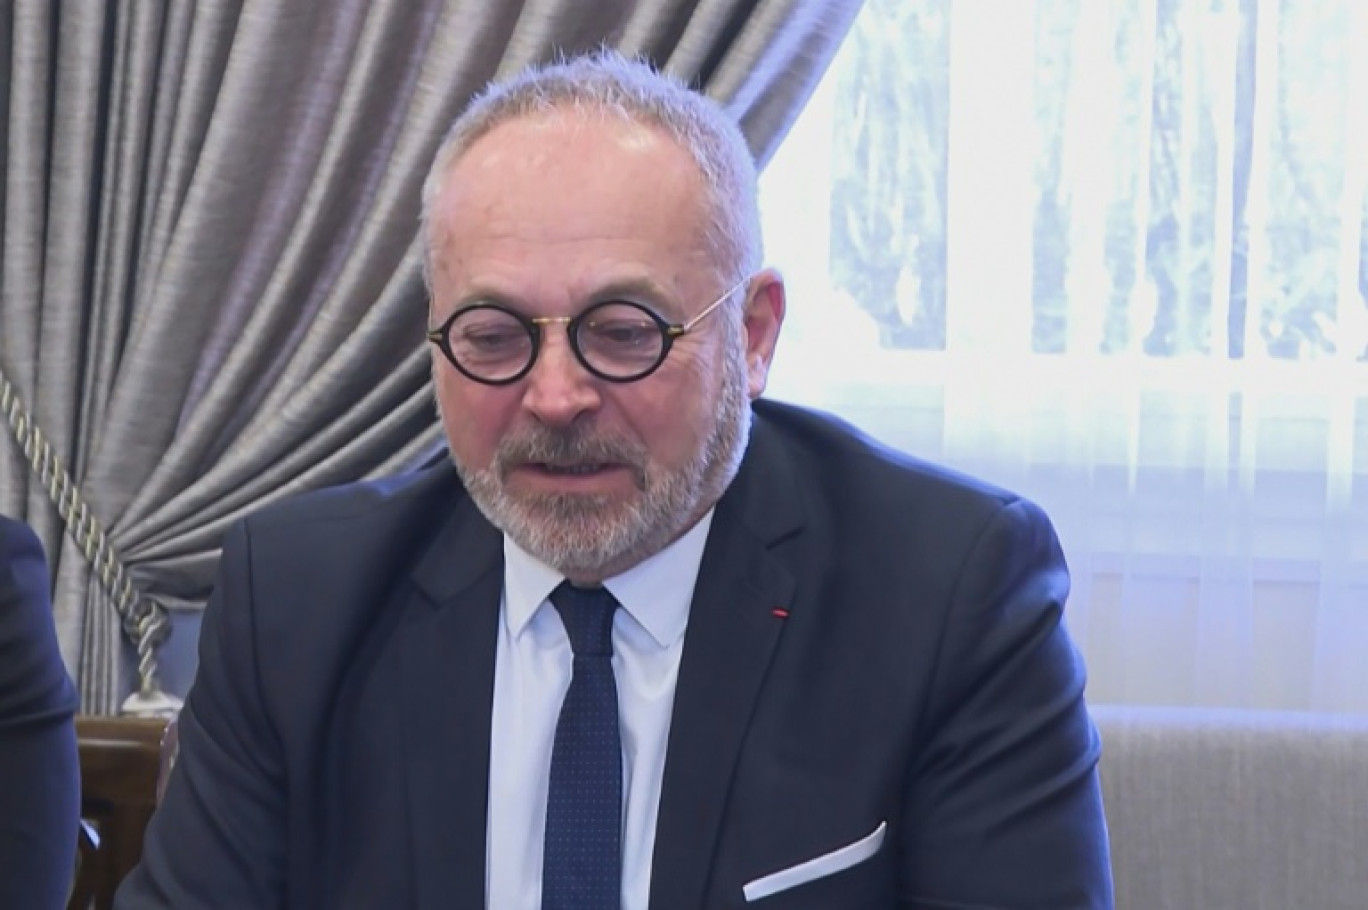 Capture d'écran d'une vidéo diffusée par Télé Liban le 13 février 2020 montrant le sénateur français Joël Guerriau lors d'une visite au Liban © Handout